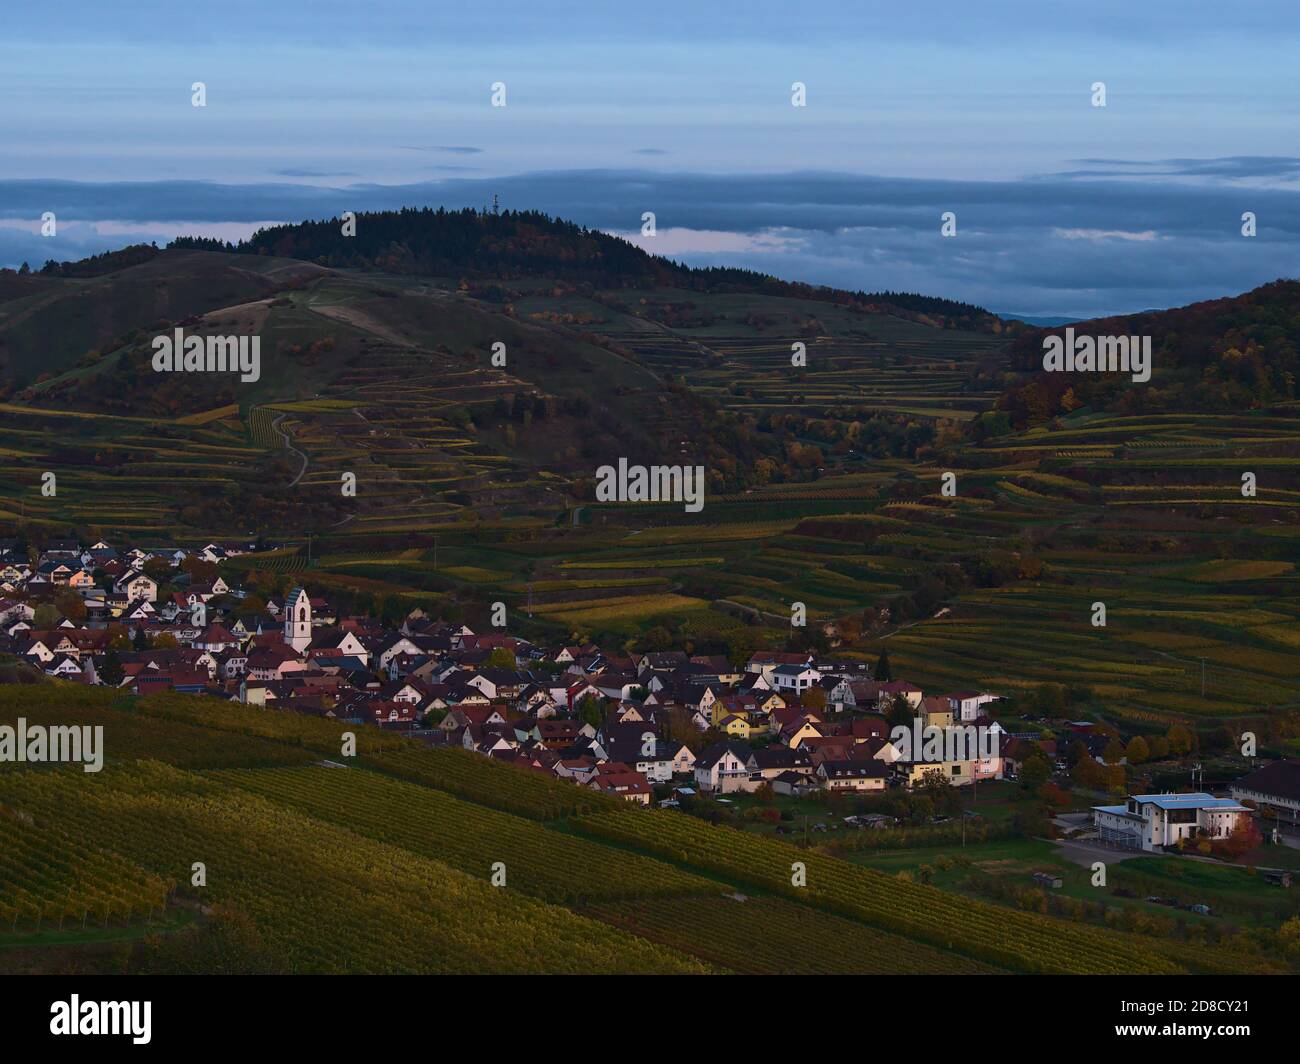 Vue aérienne du petit village d'Oberbergen situé dans une vallée à Kaiserstuhl, en Allemagne, entouré de vignobles en terrasse dans la lumière du soir à l'automne. Banque D'Images